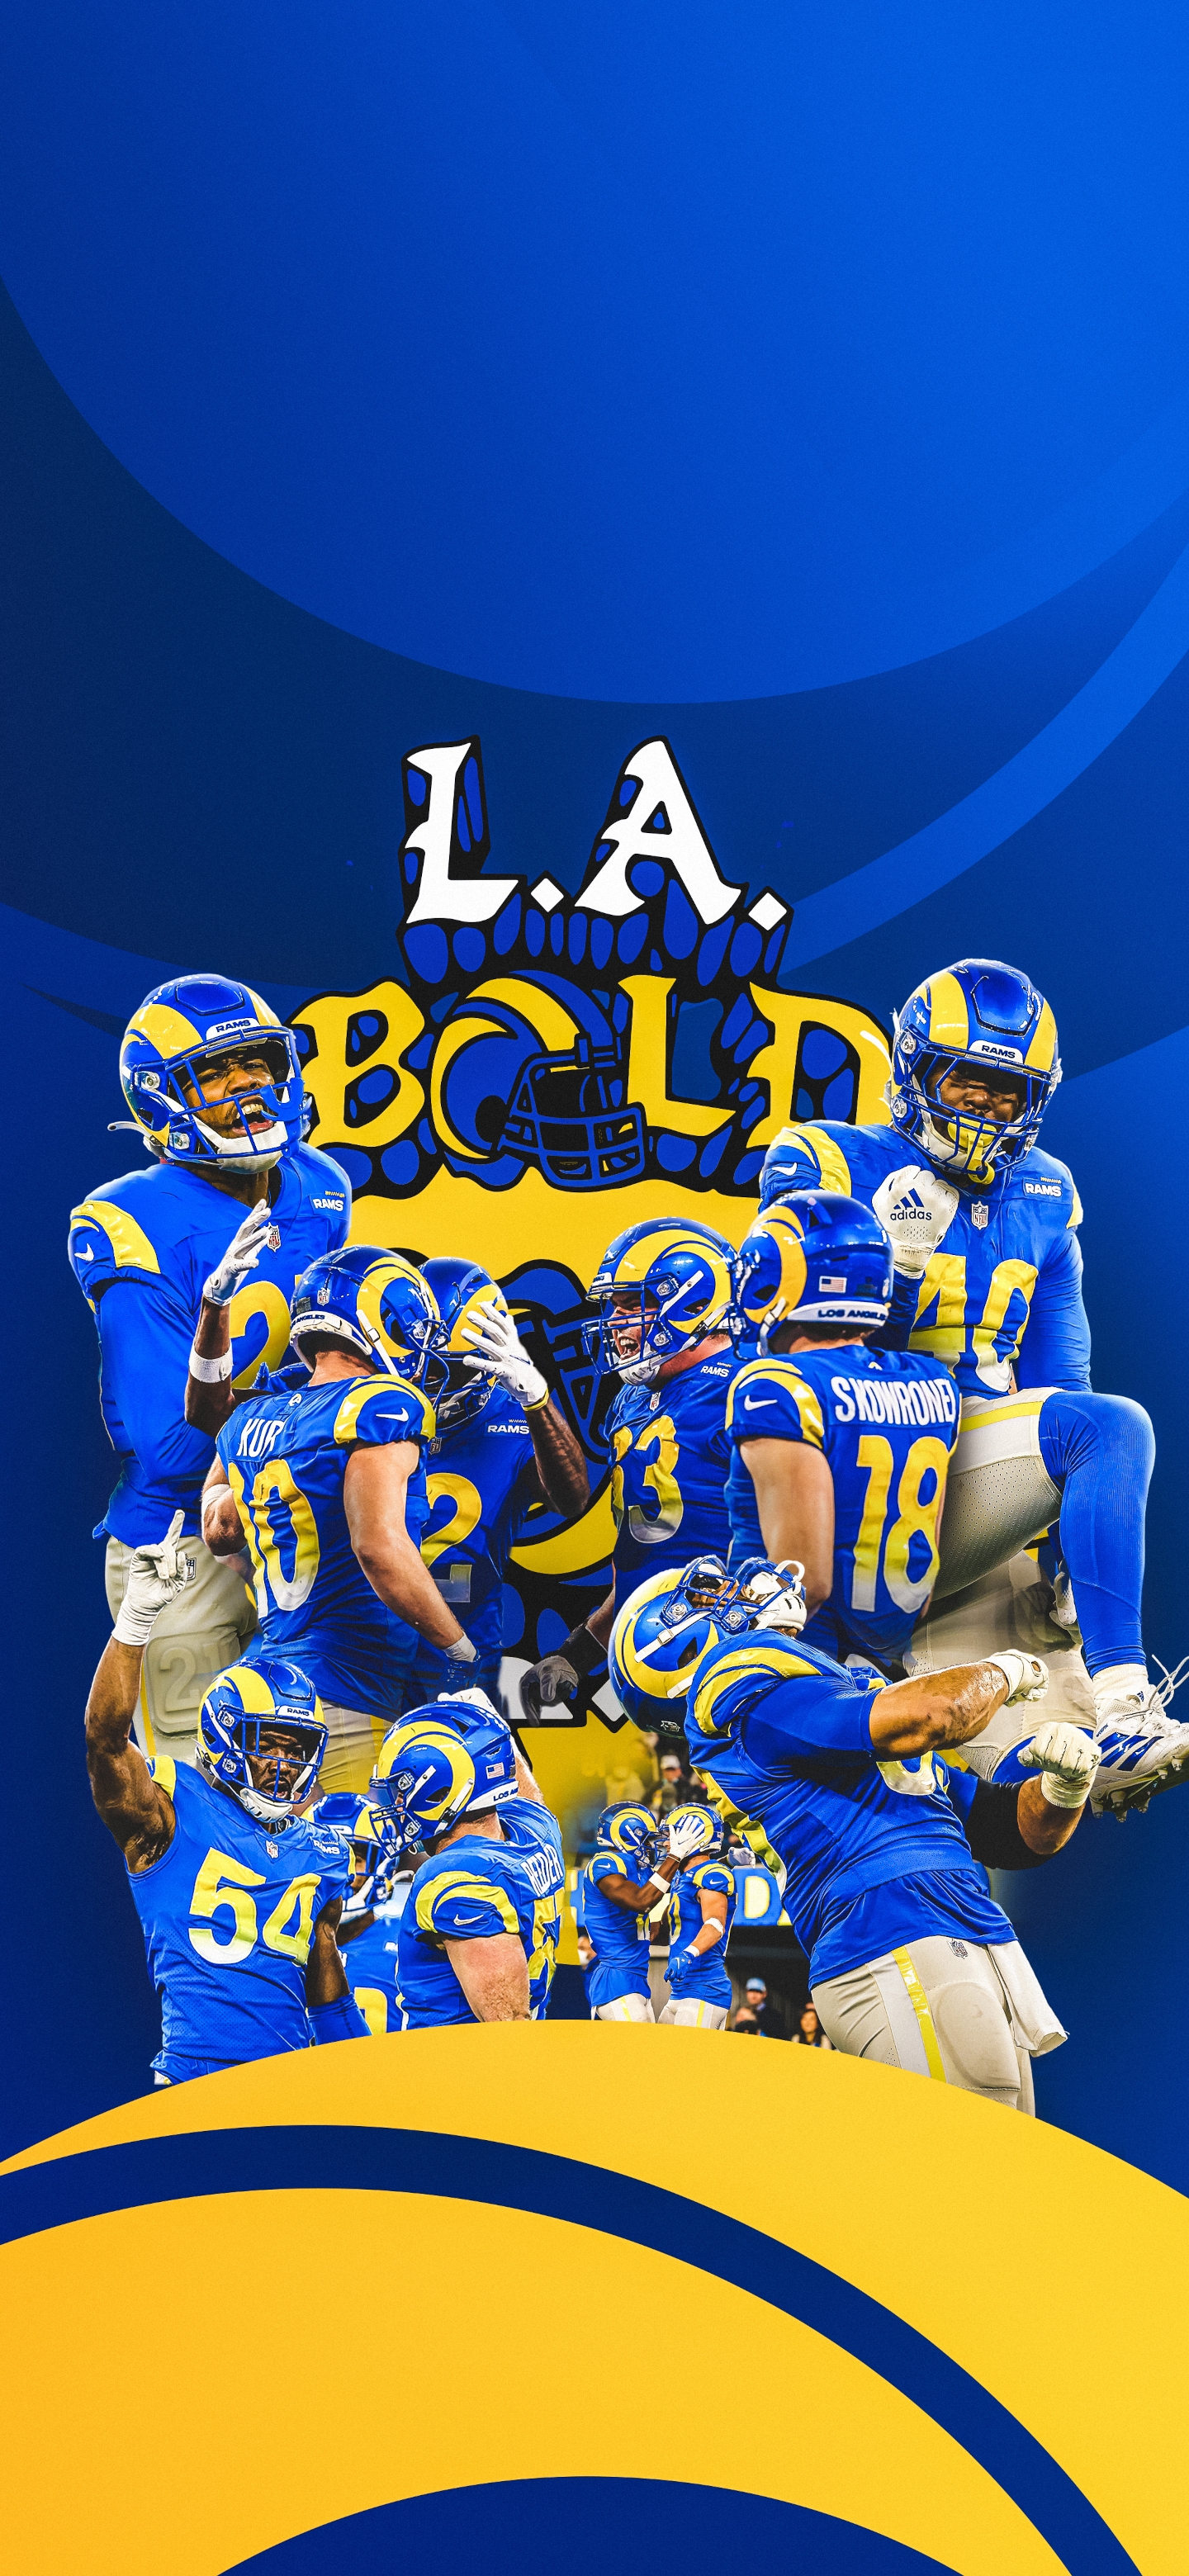 Descarga gratuita de fondo de pantalla para móvil de Fútbol, Deporte, Los Ángeles Rams.